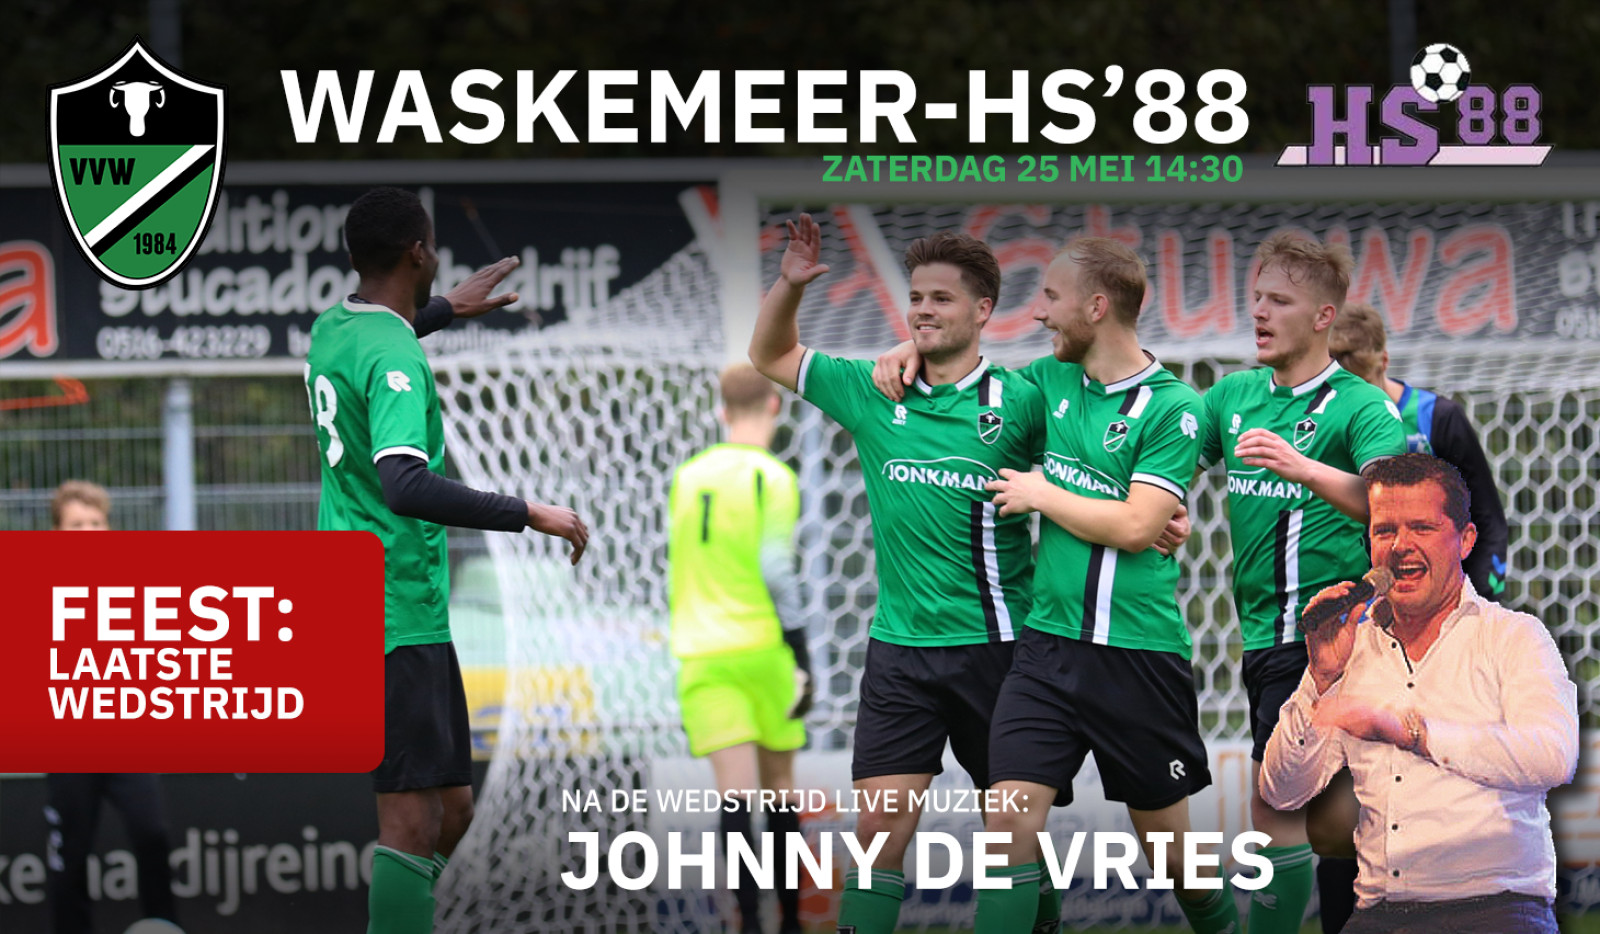 Laatste wedstrijd: Waskemeer - HS'88